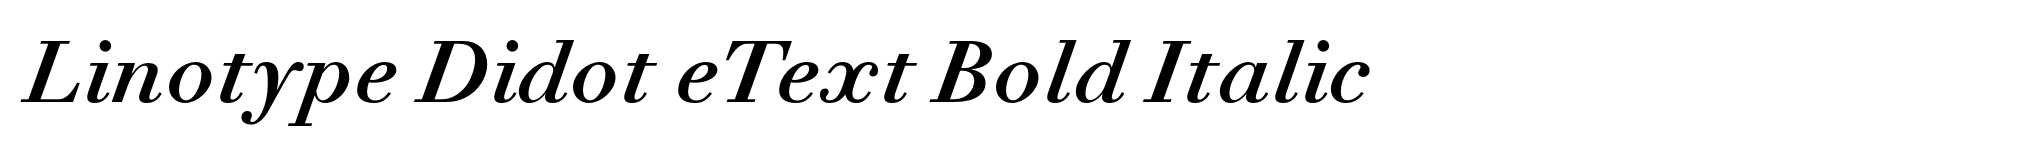 Linotype Didot eText Bold Italic image